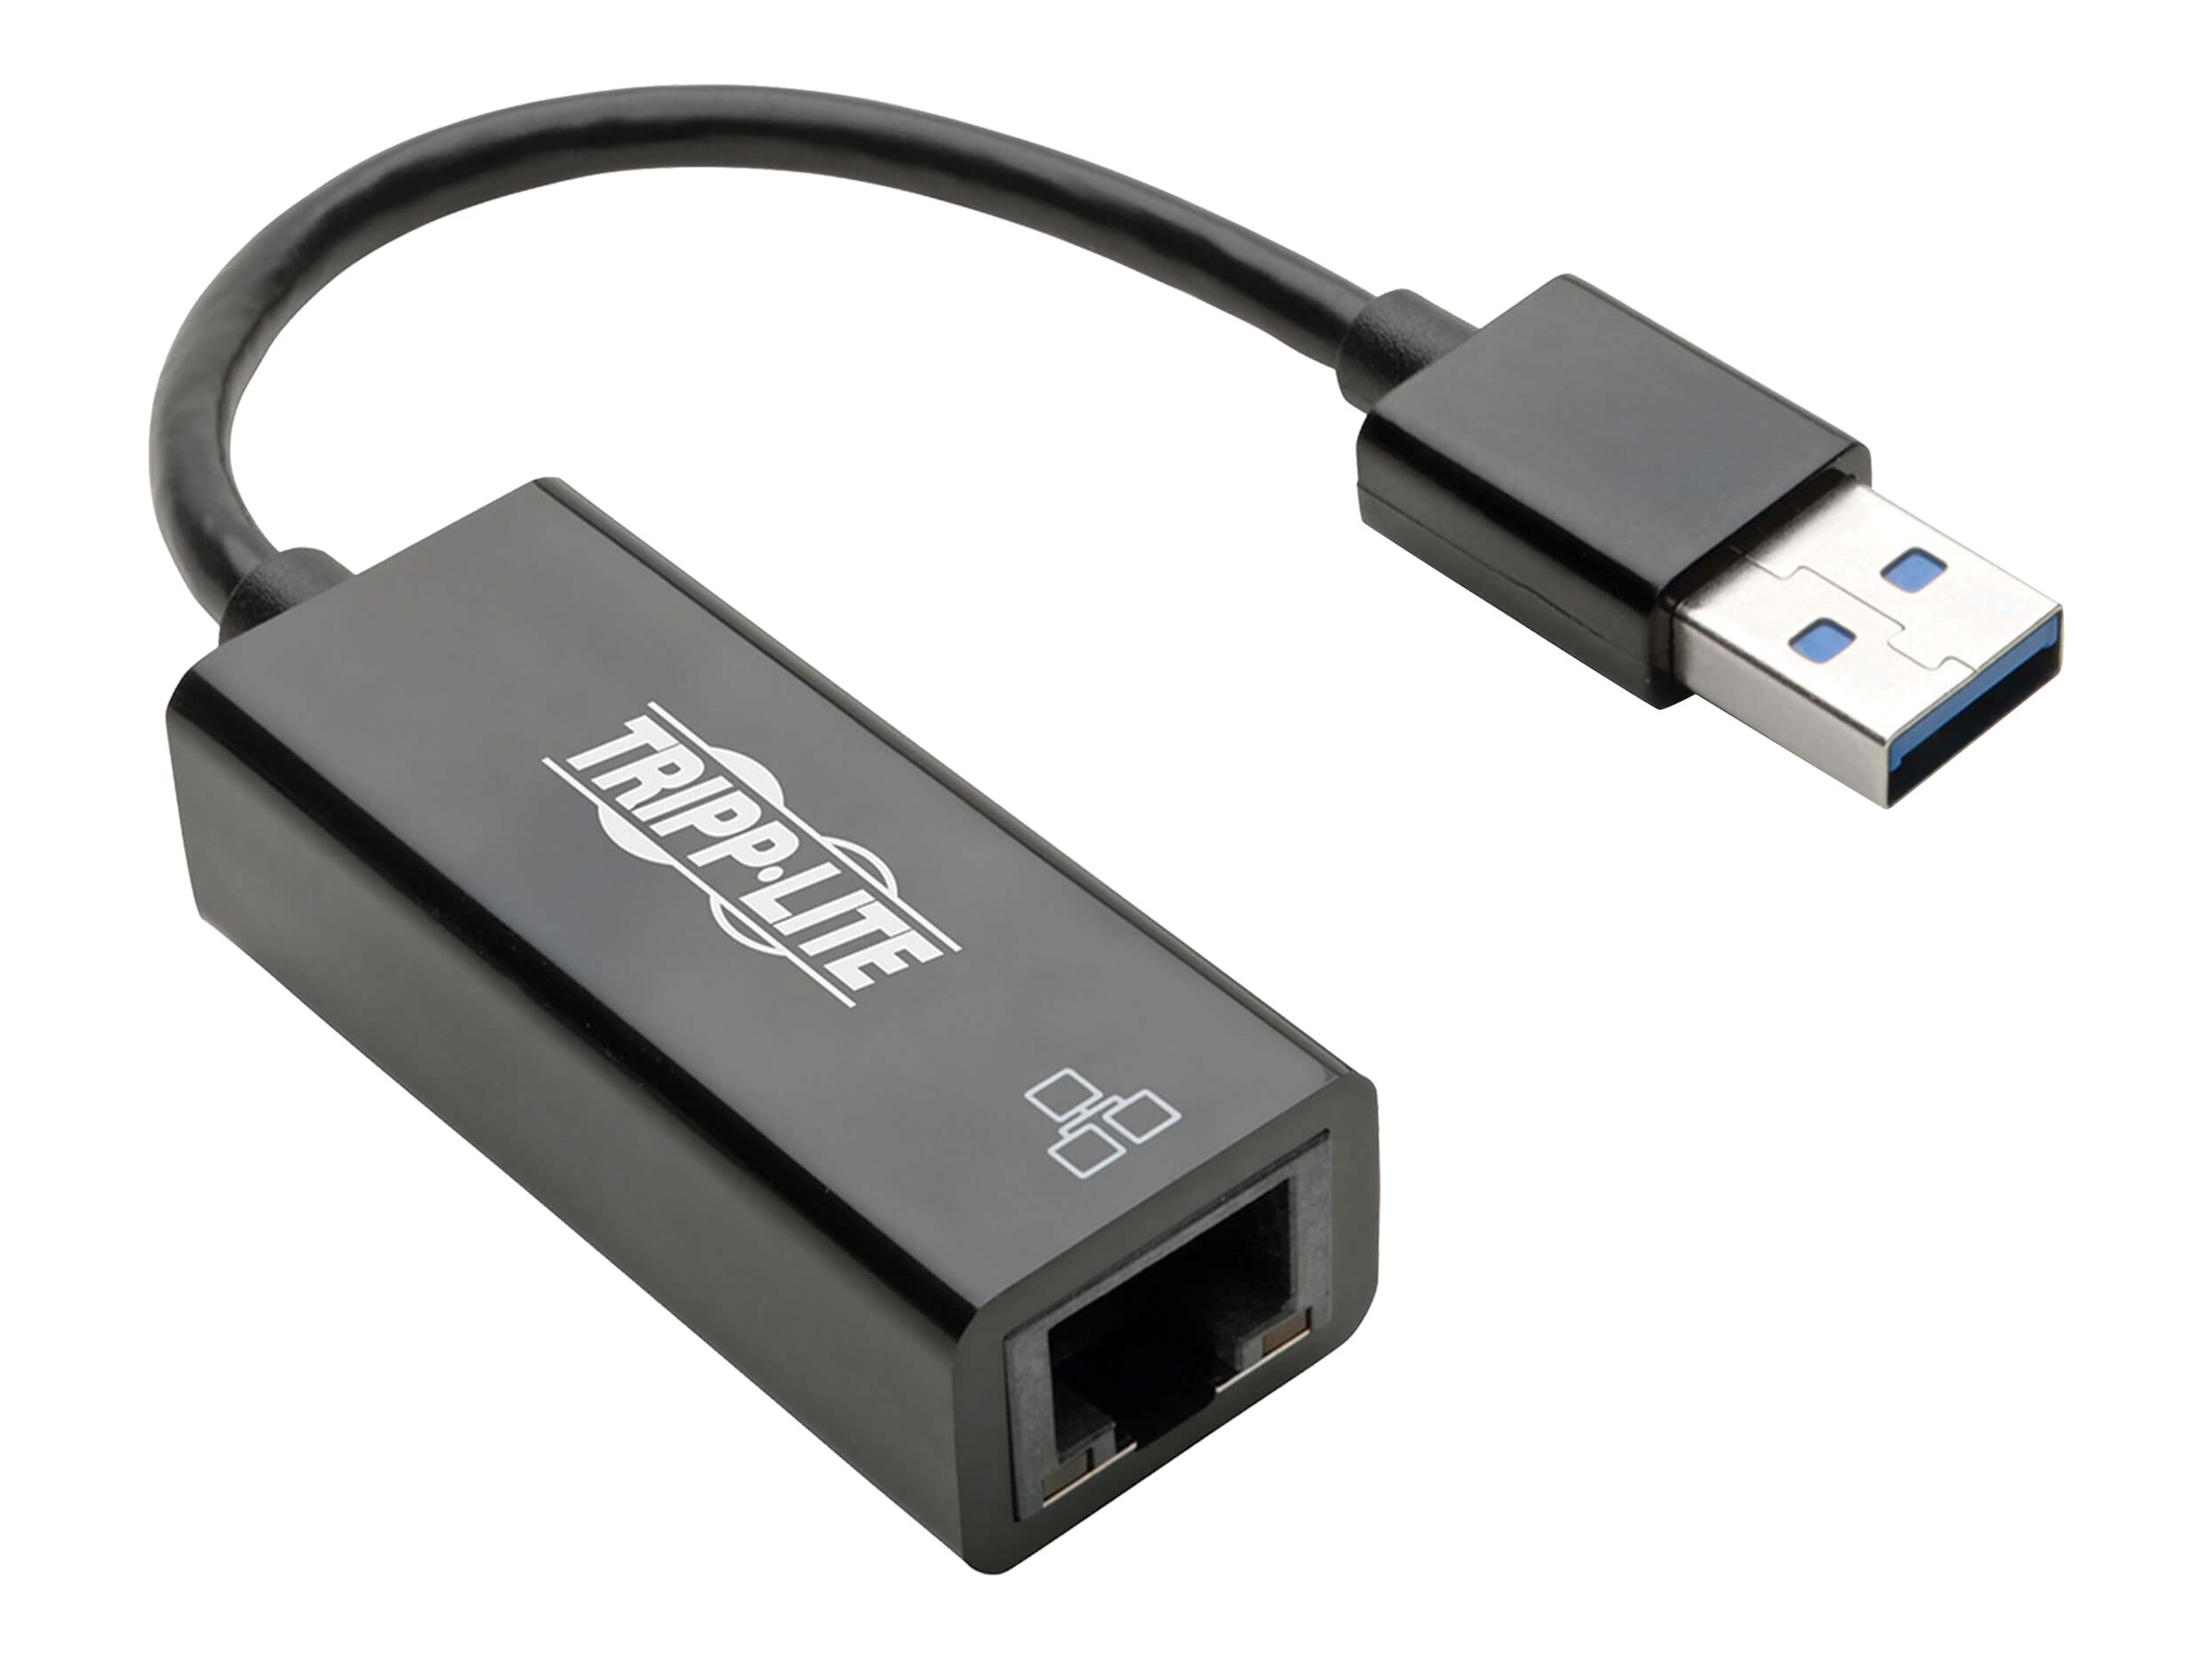 Tripp Lite U336-000-R USB 3.0 to Gigabit Ethernet NIC Network Adapter - 10/100/1000 Mbps, Black